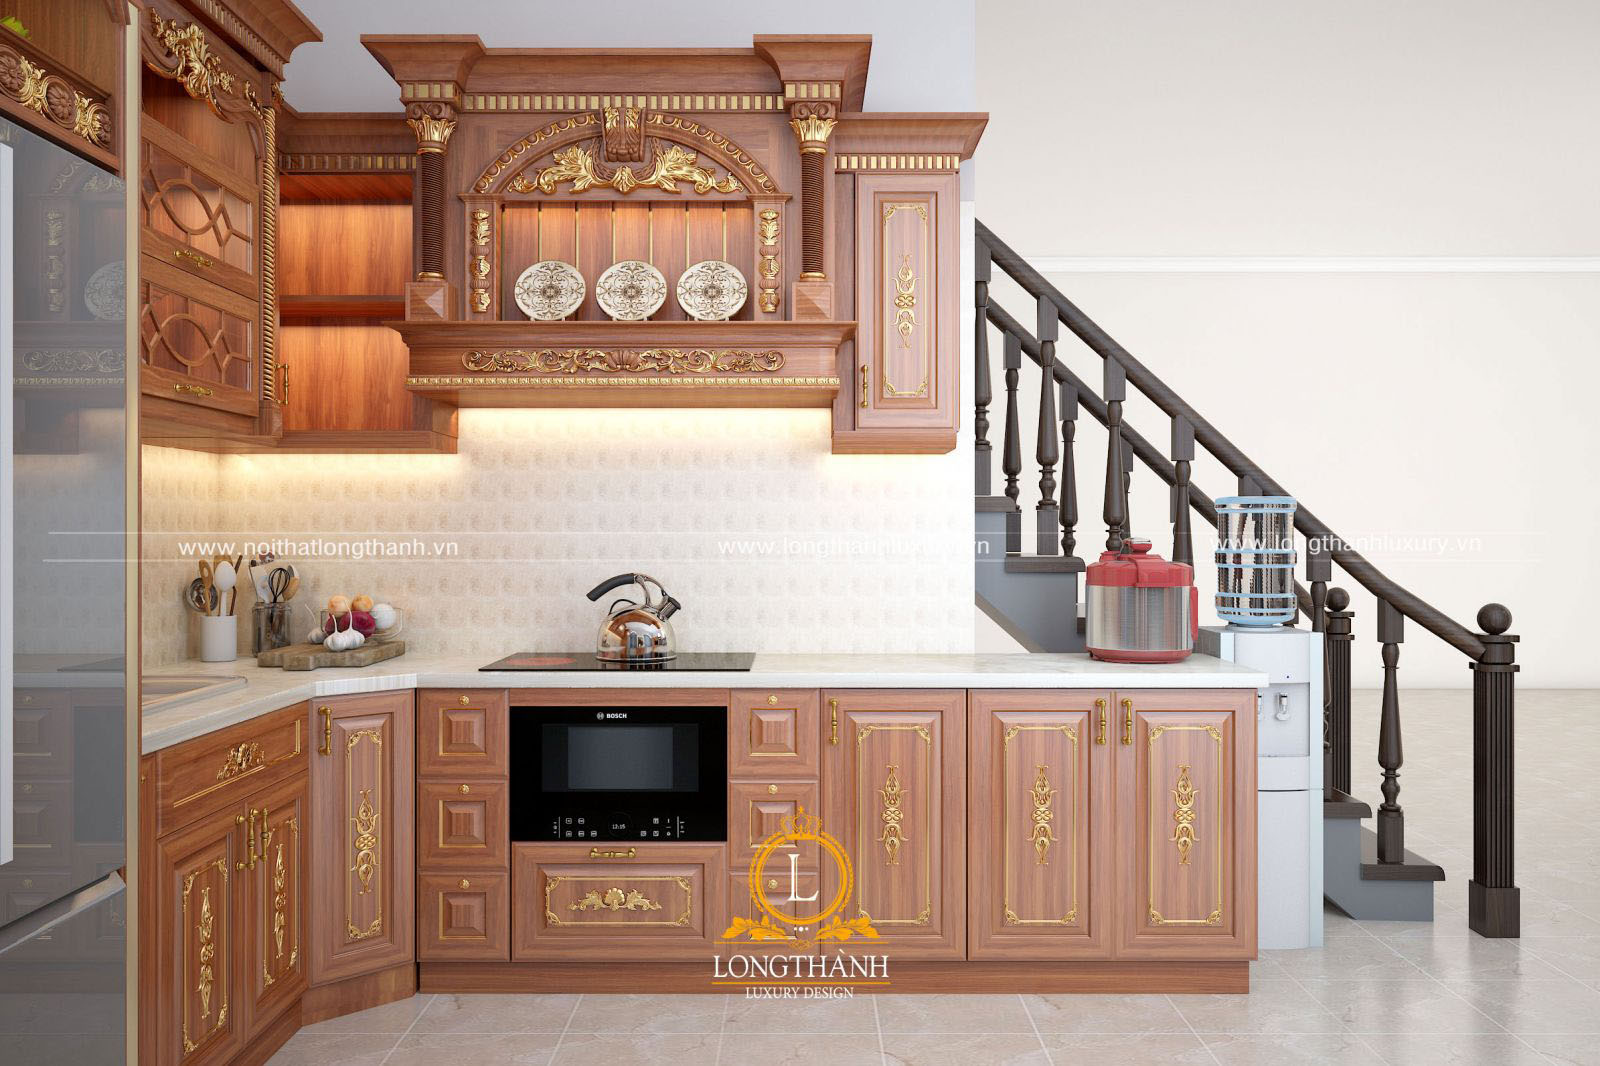 Thiết kế tủ bếp tân cổ điển mạ vàng cho nhà biệt thự theo hình chữ L